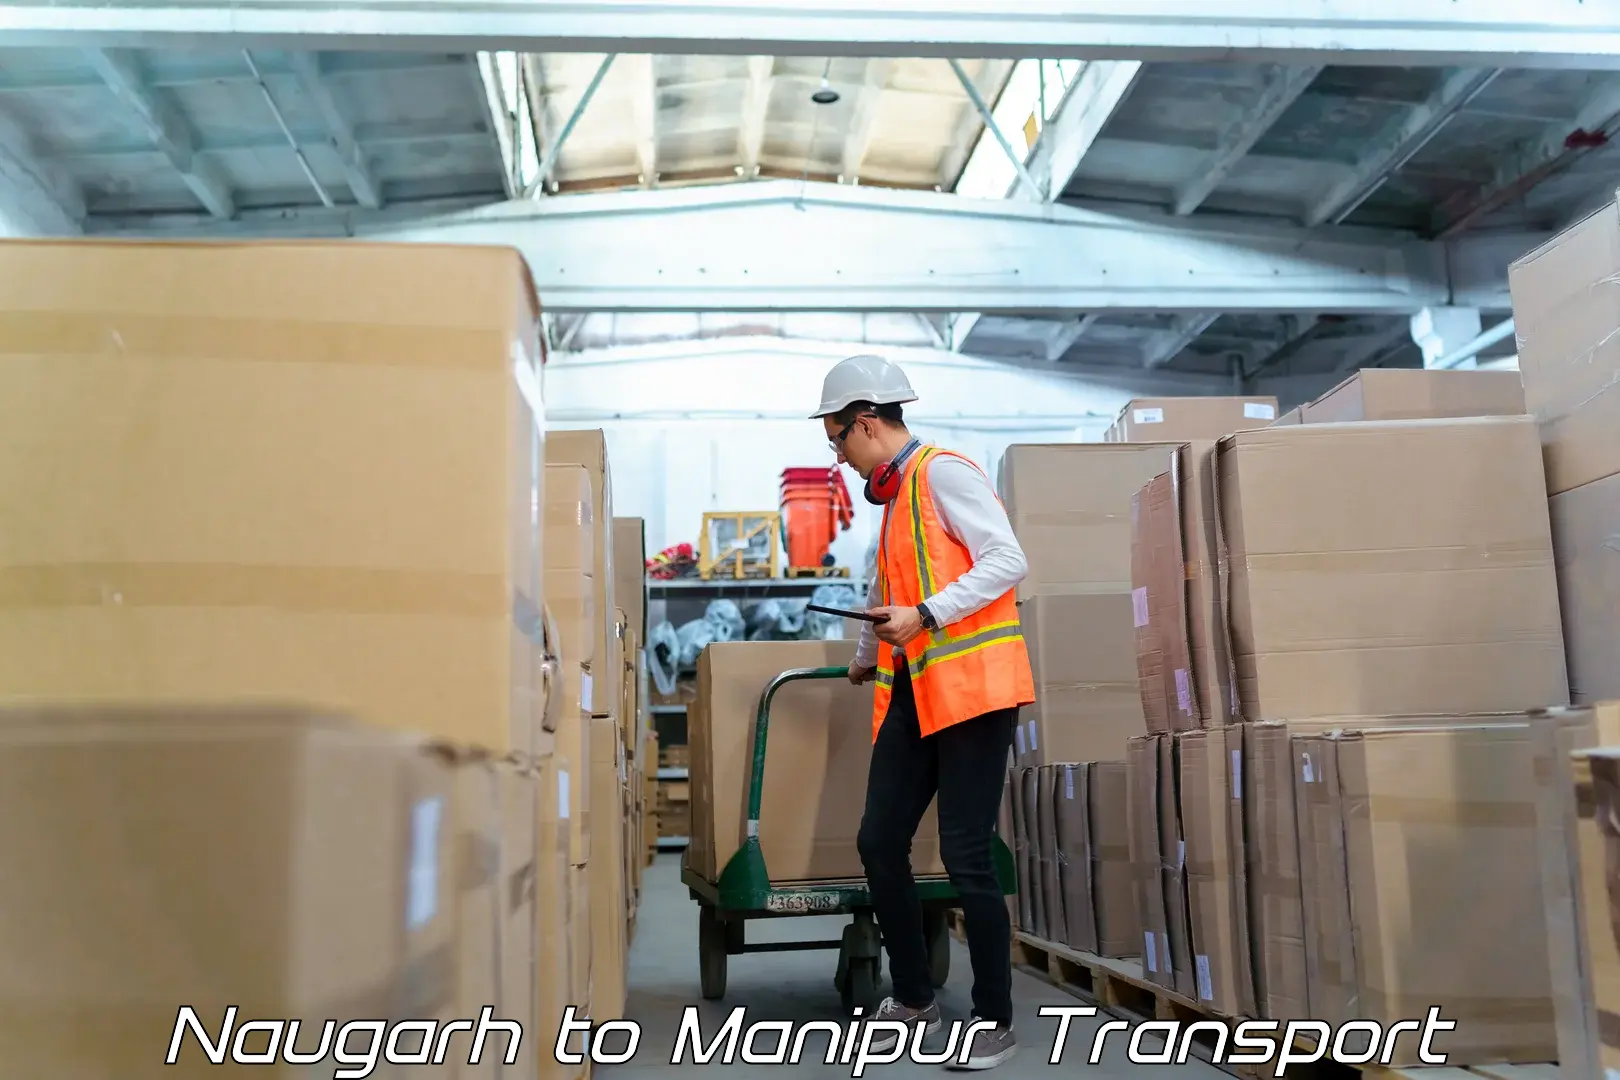 Furniture transport service Naugarh to NIT Manipur